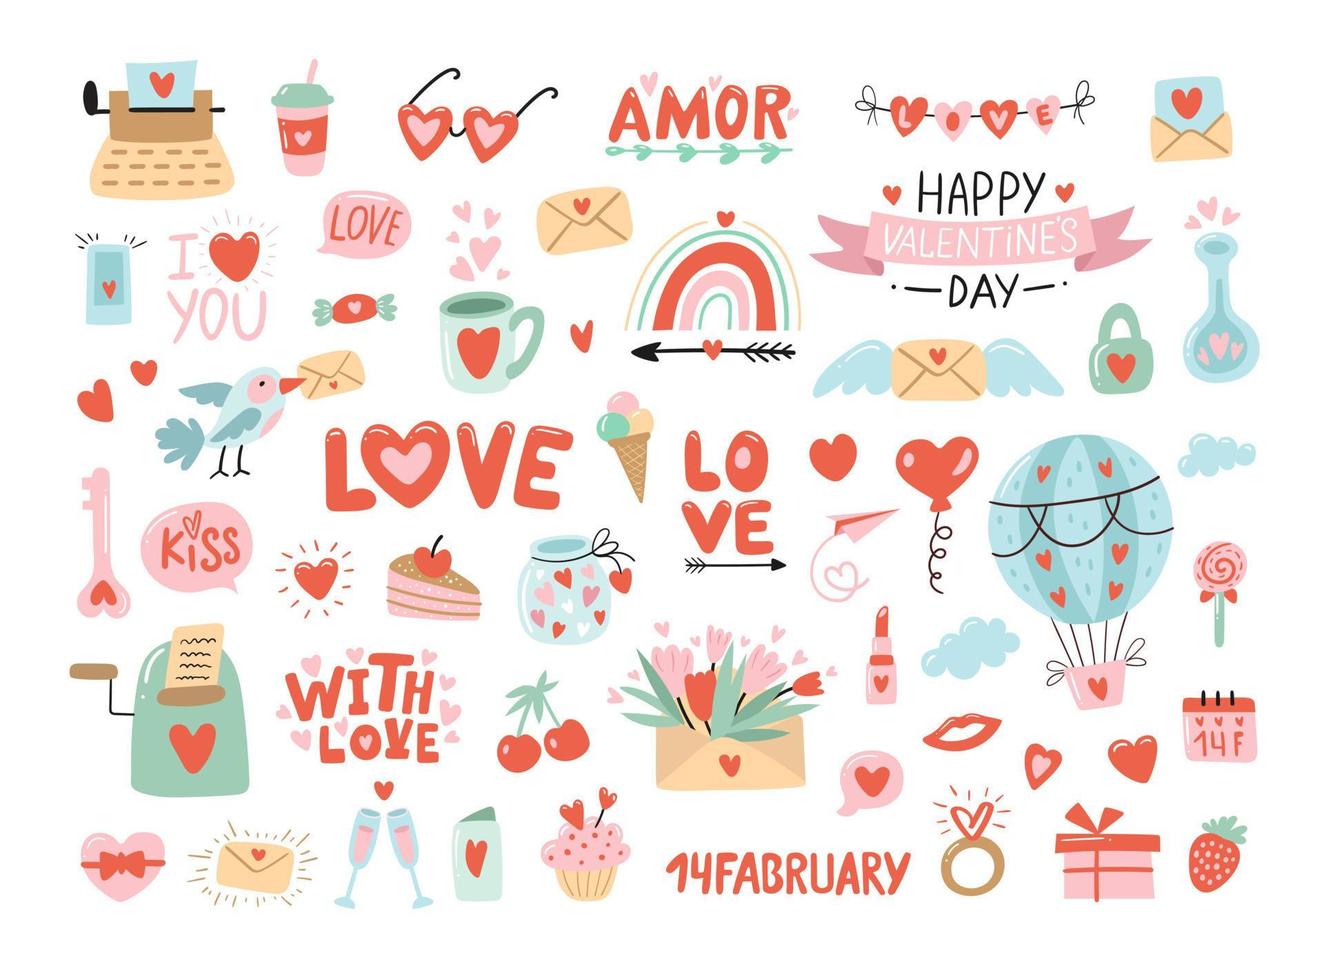 San Valentino con cuore e altri elementi su sfondo bianco. concetto di San Valentino, matrimonio e amore. illustrazioni vettoriali